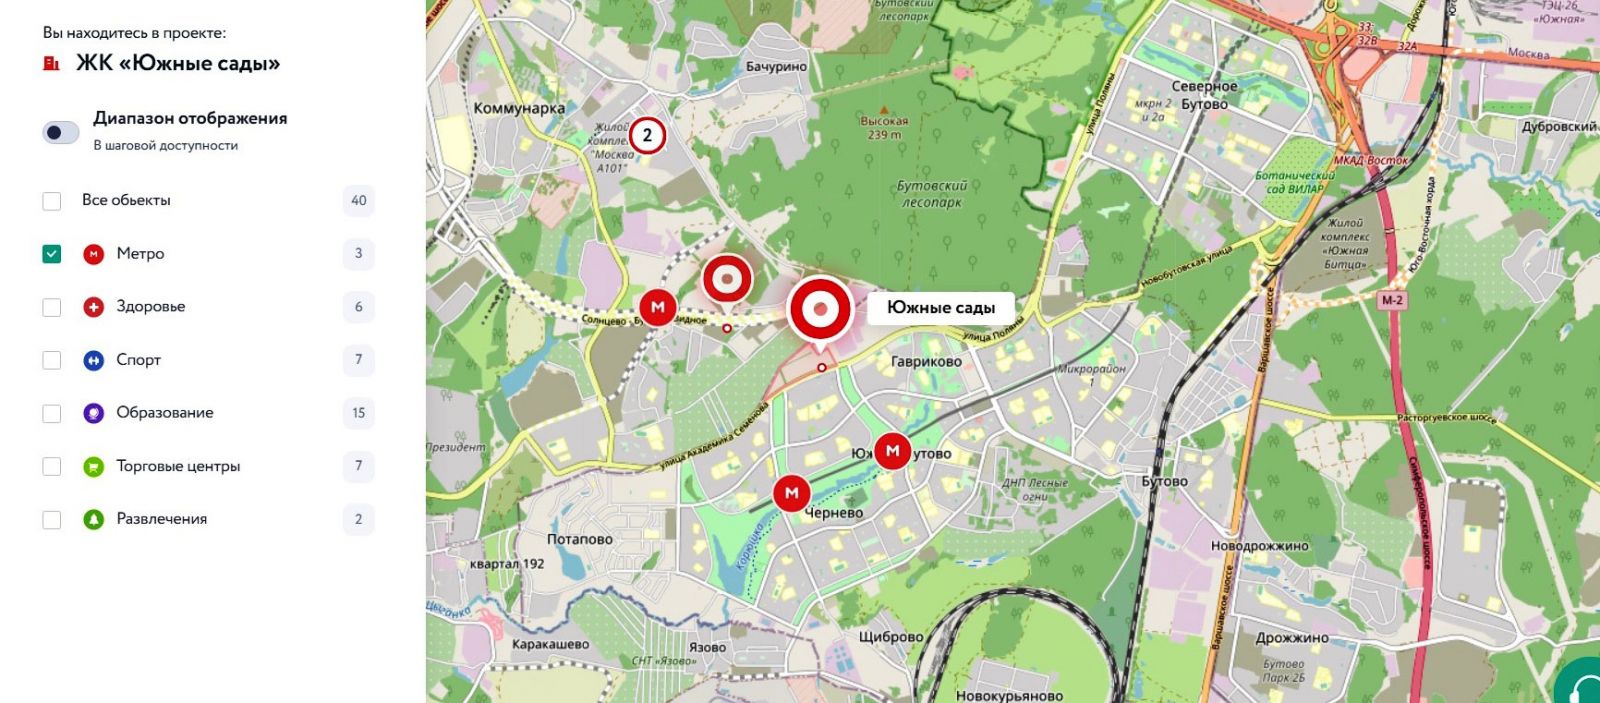 Станция потапово на карте новой. Южные сады Москва. А101 Южные сады. ЖК Южные сады на карте Москвы.